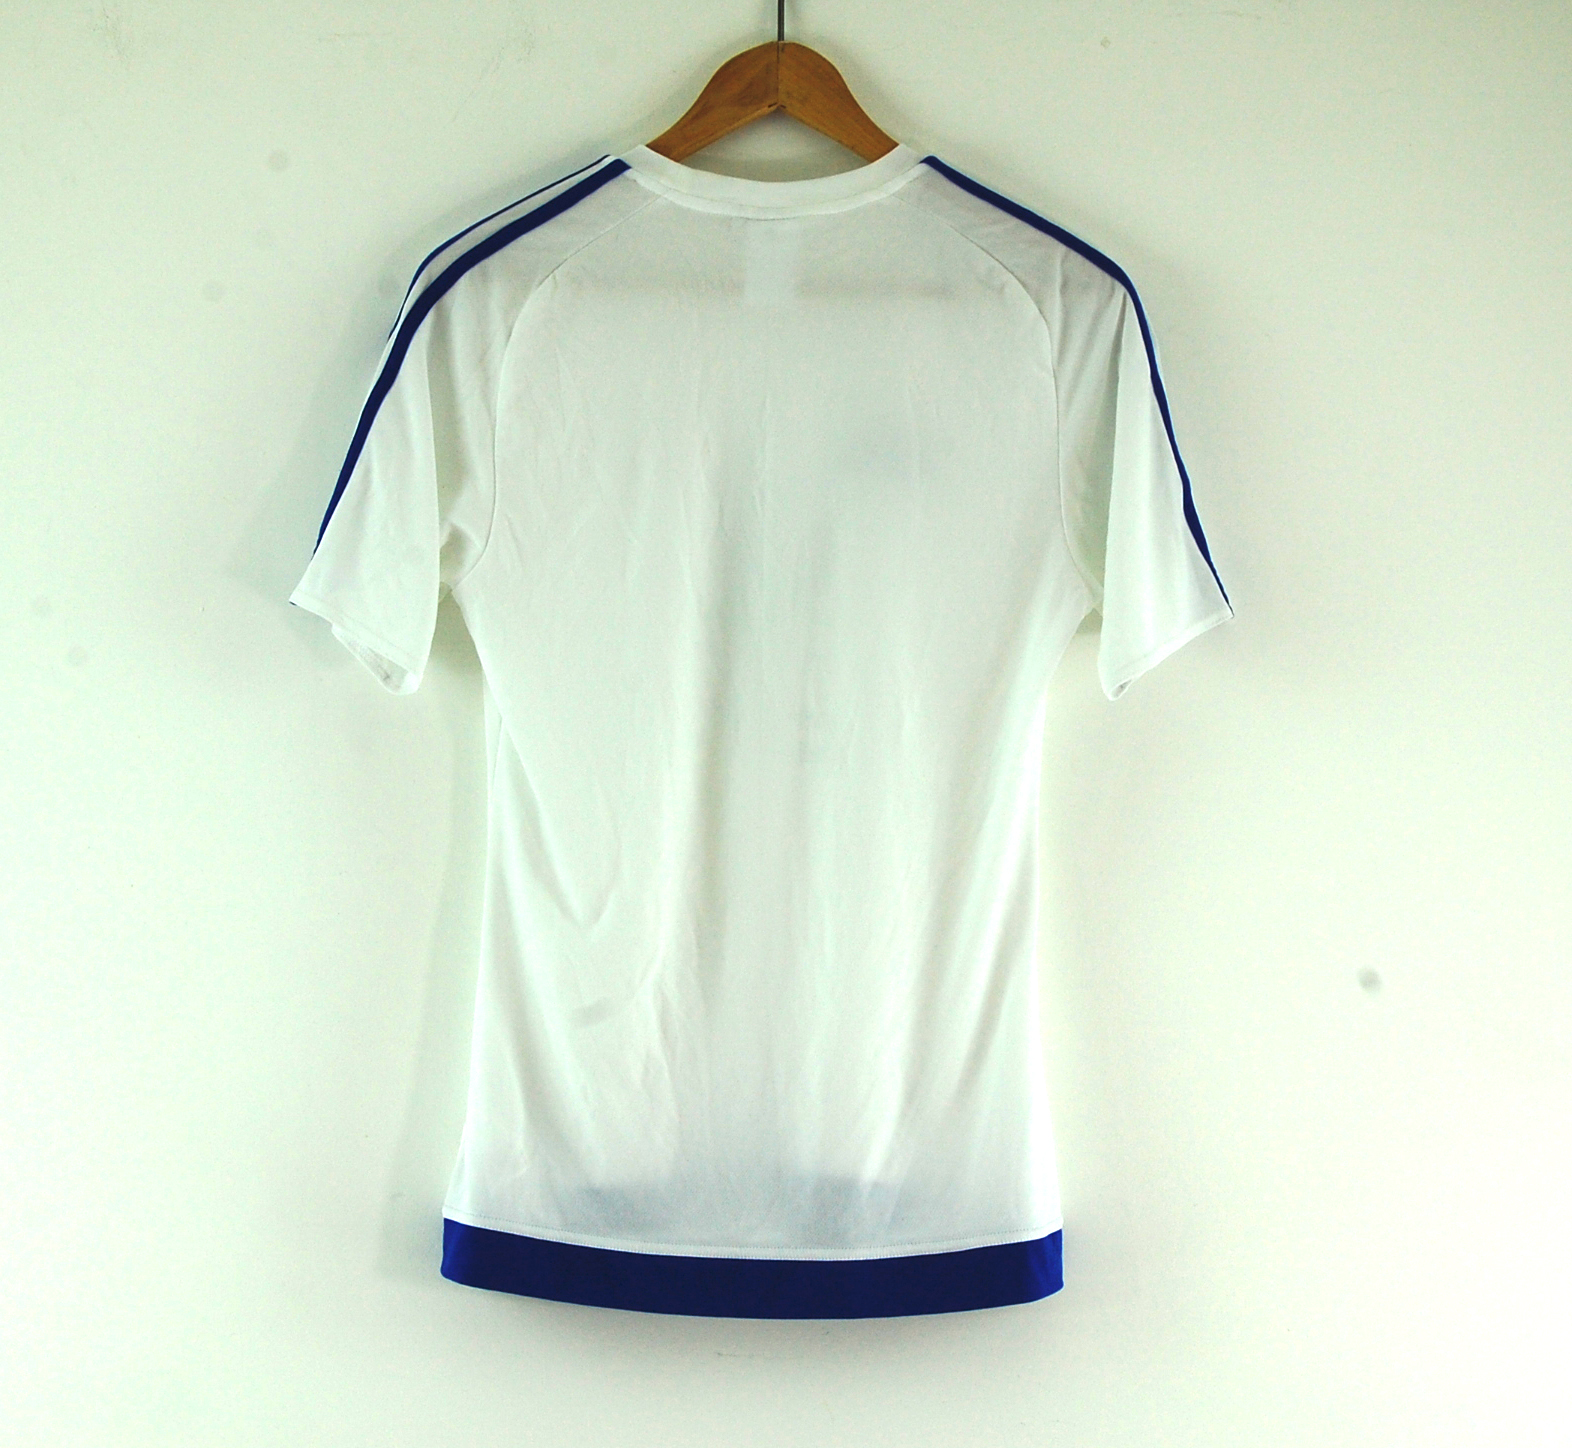 Adidas Football T-shirt - UK S - Blue 17 Vintage Clothing